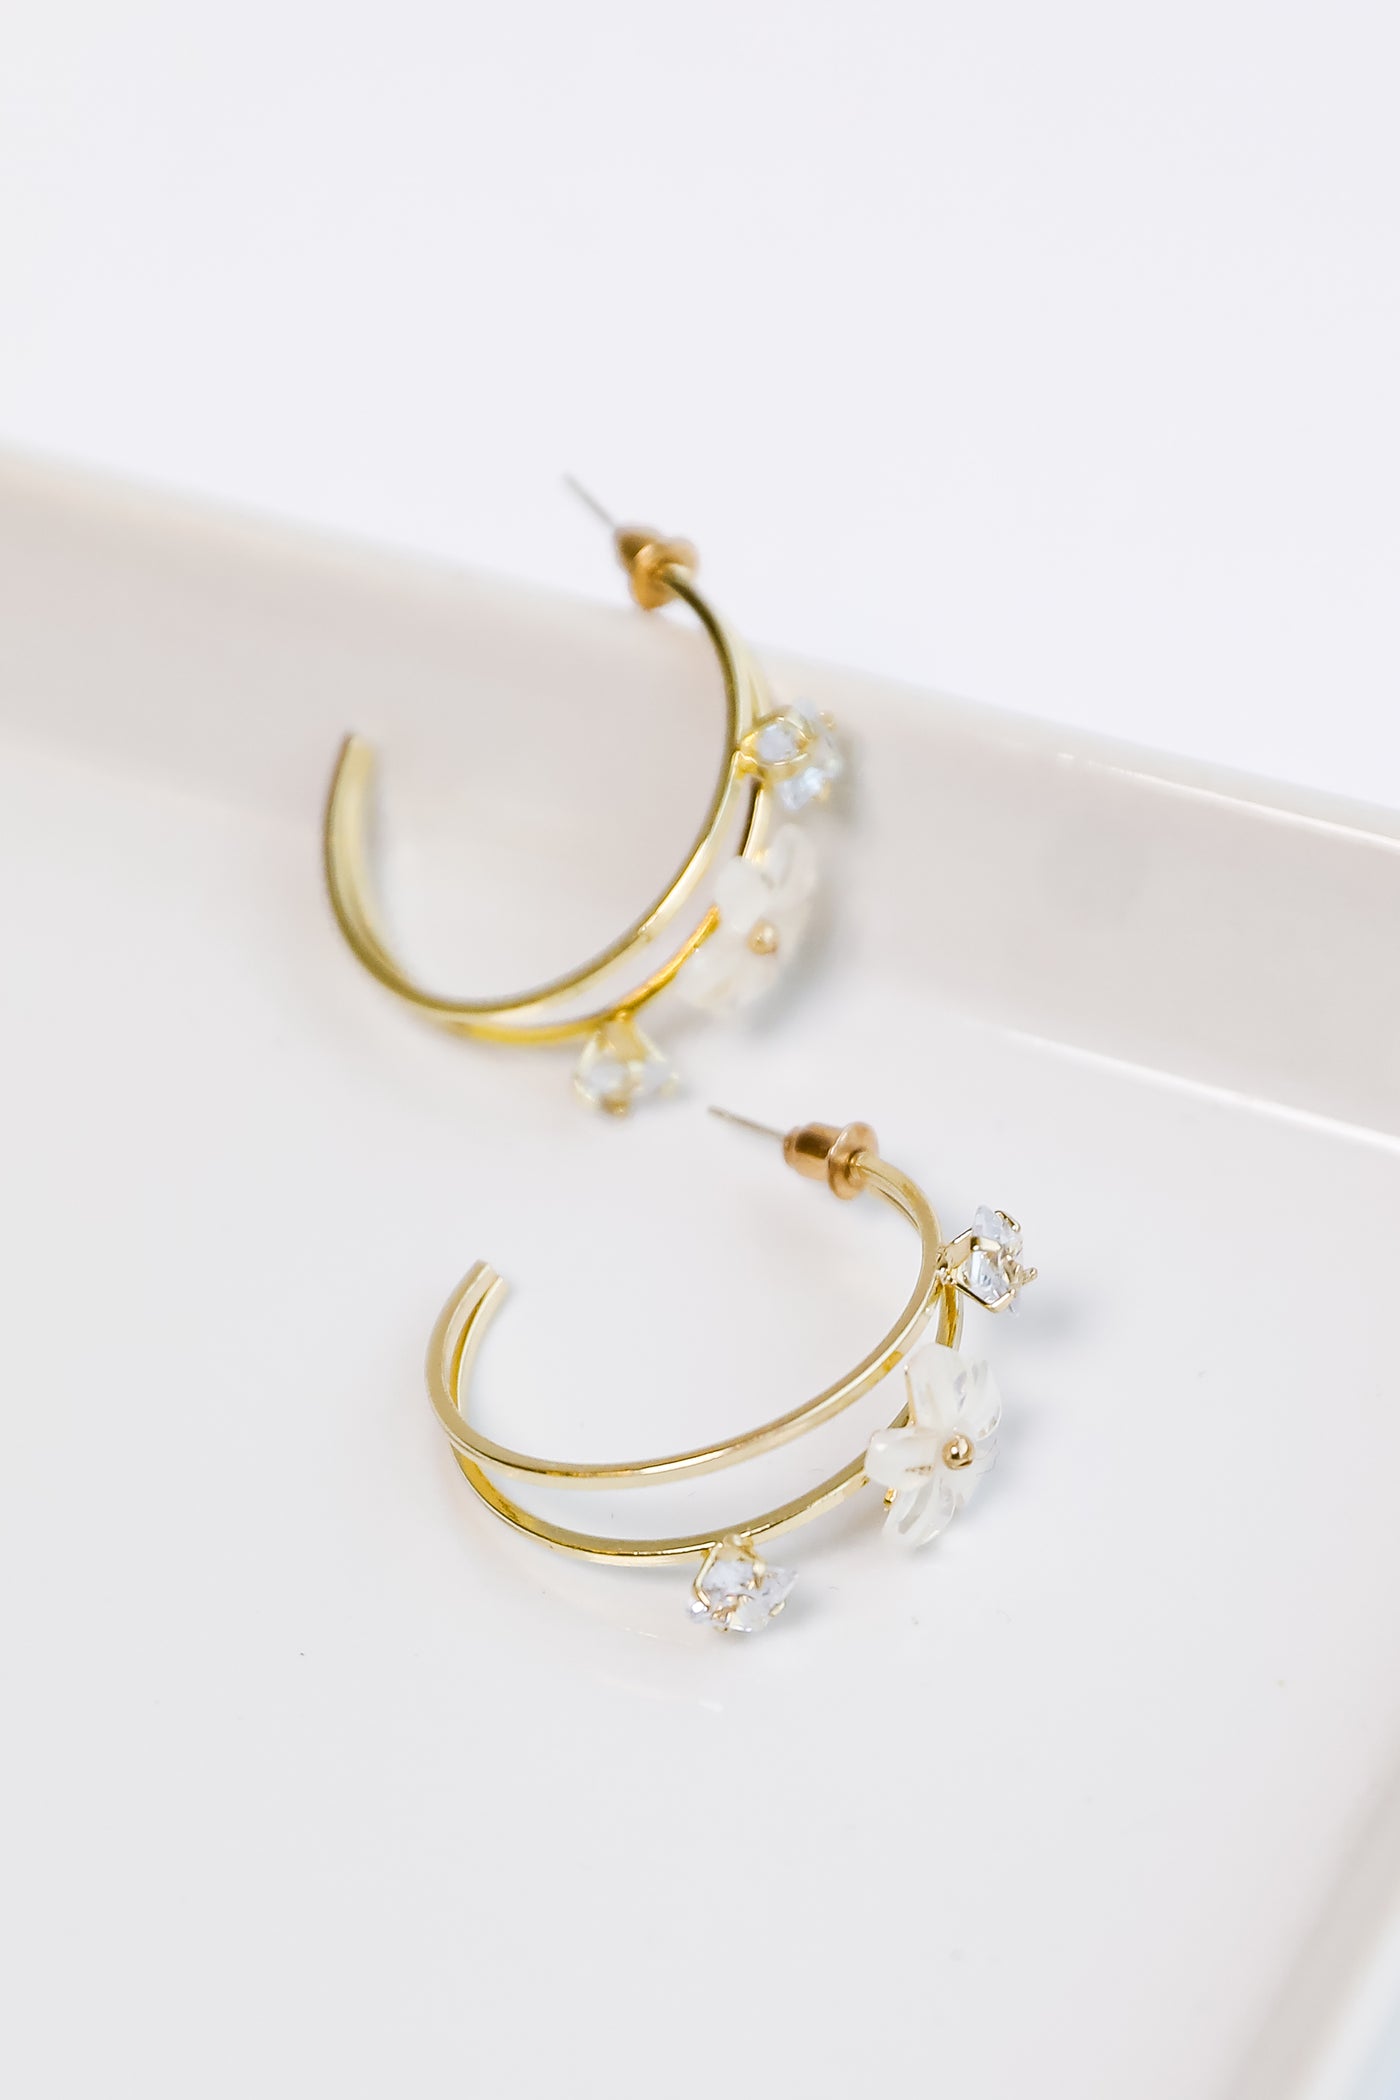 Gold Flower + Rhinestone Hoop Earrings flat lay